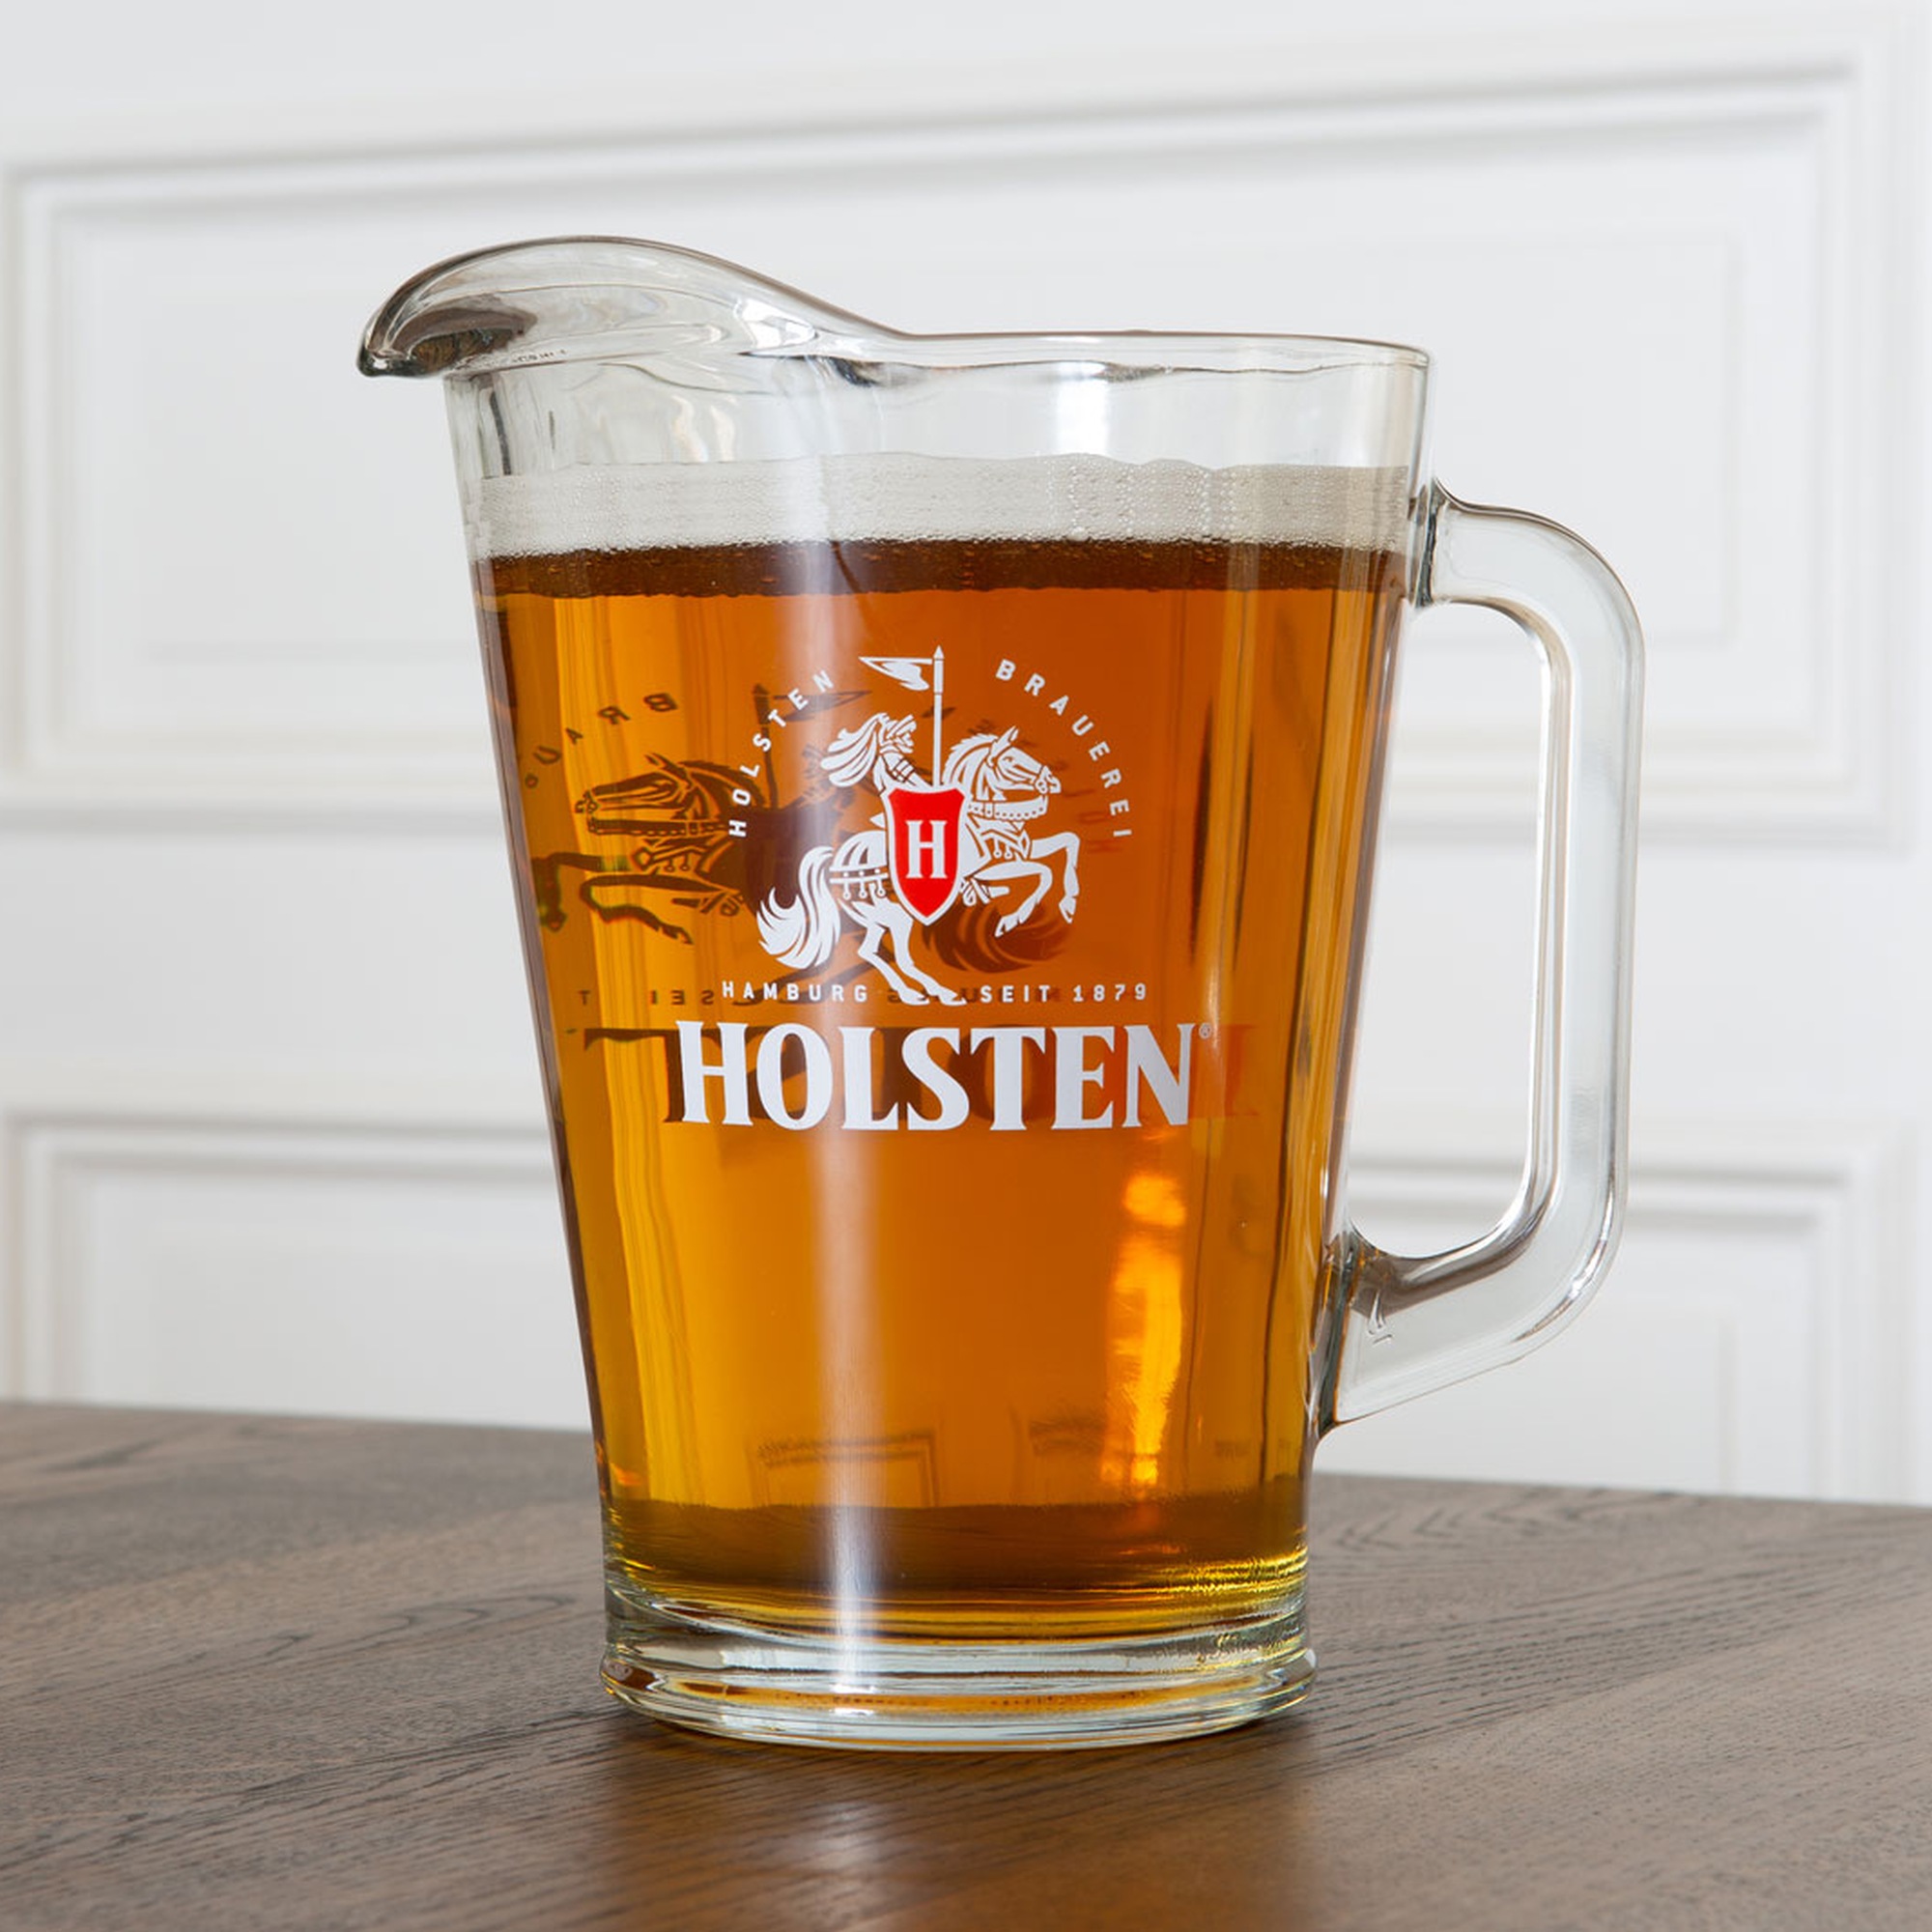 Holsten - Pitcher - 1.5 Liter